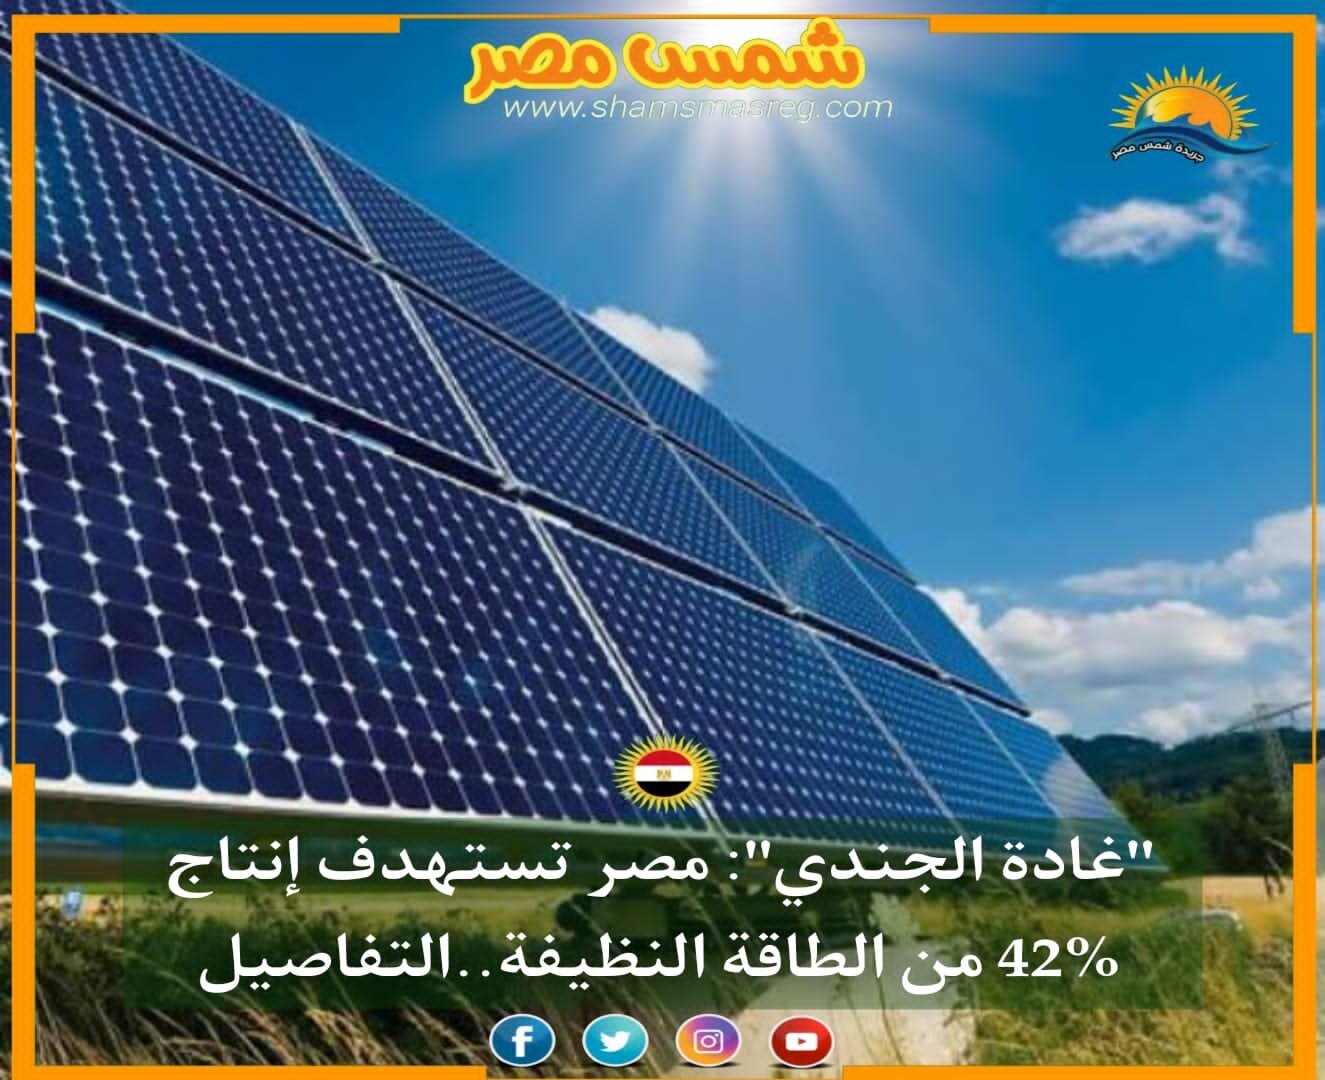 |شمس مصر|.. "غادة الجندي": مصر تستهدف إنتاج 42% من الطاقة النظيفة.. تعرف التفاصيل